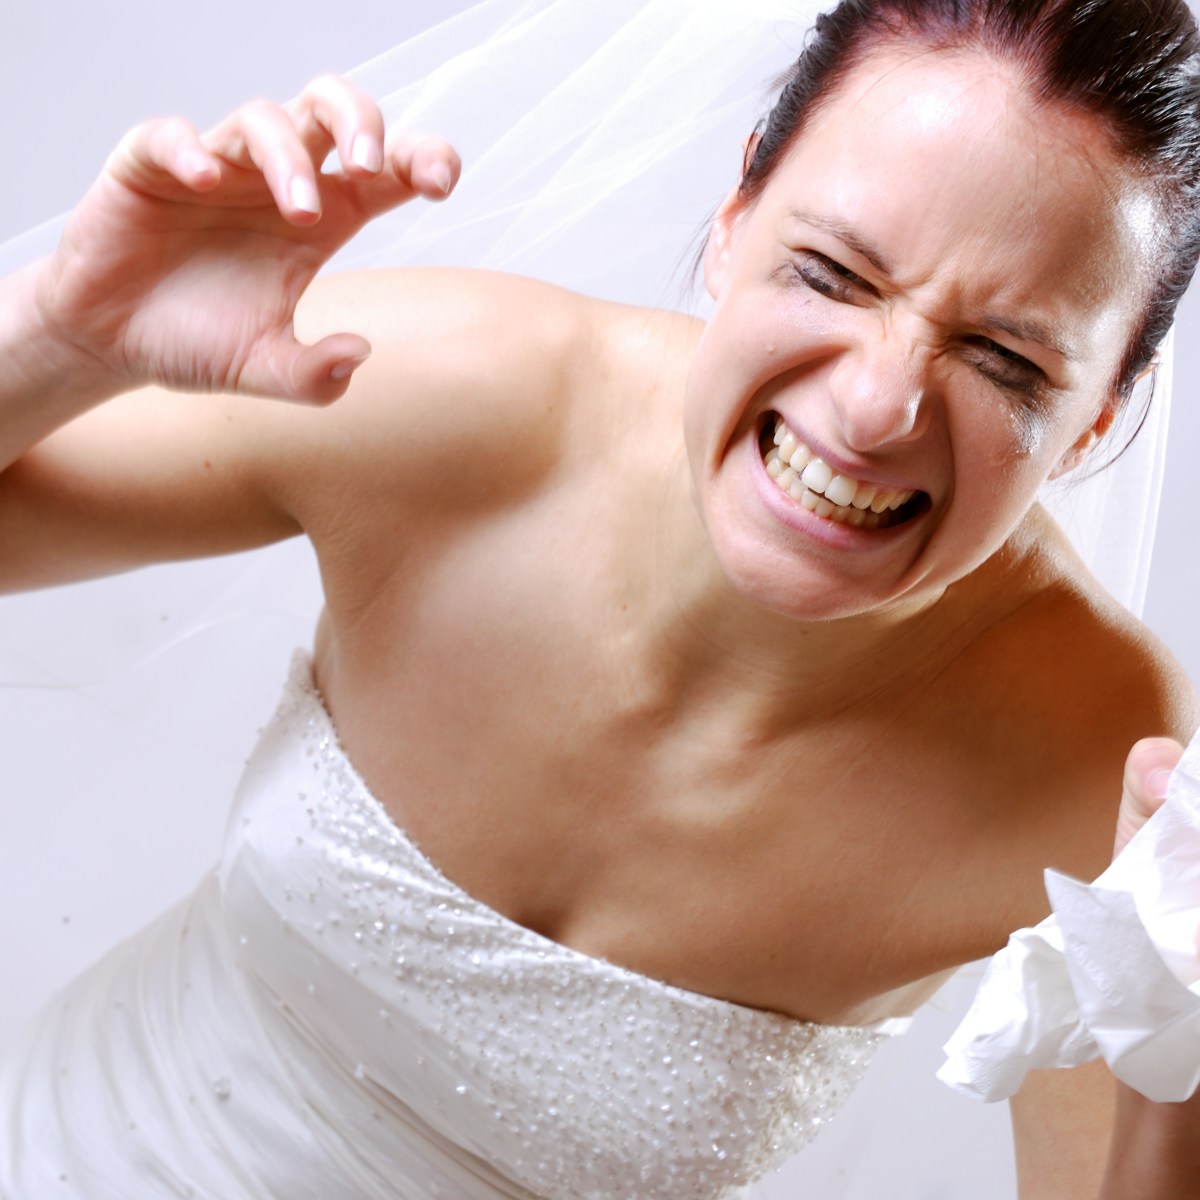 Hochzeit: Braut auf 180 – weil sich ihre Schwiegermutter dieses absolute No-Go erlaubt